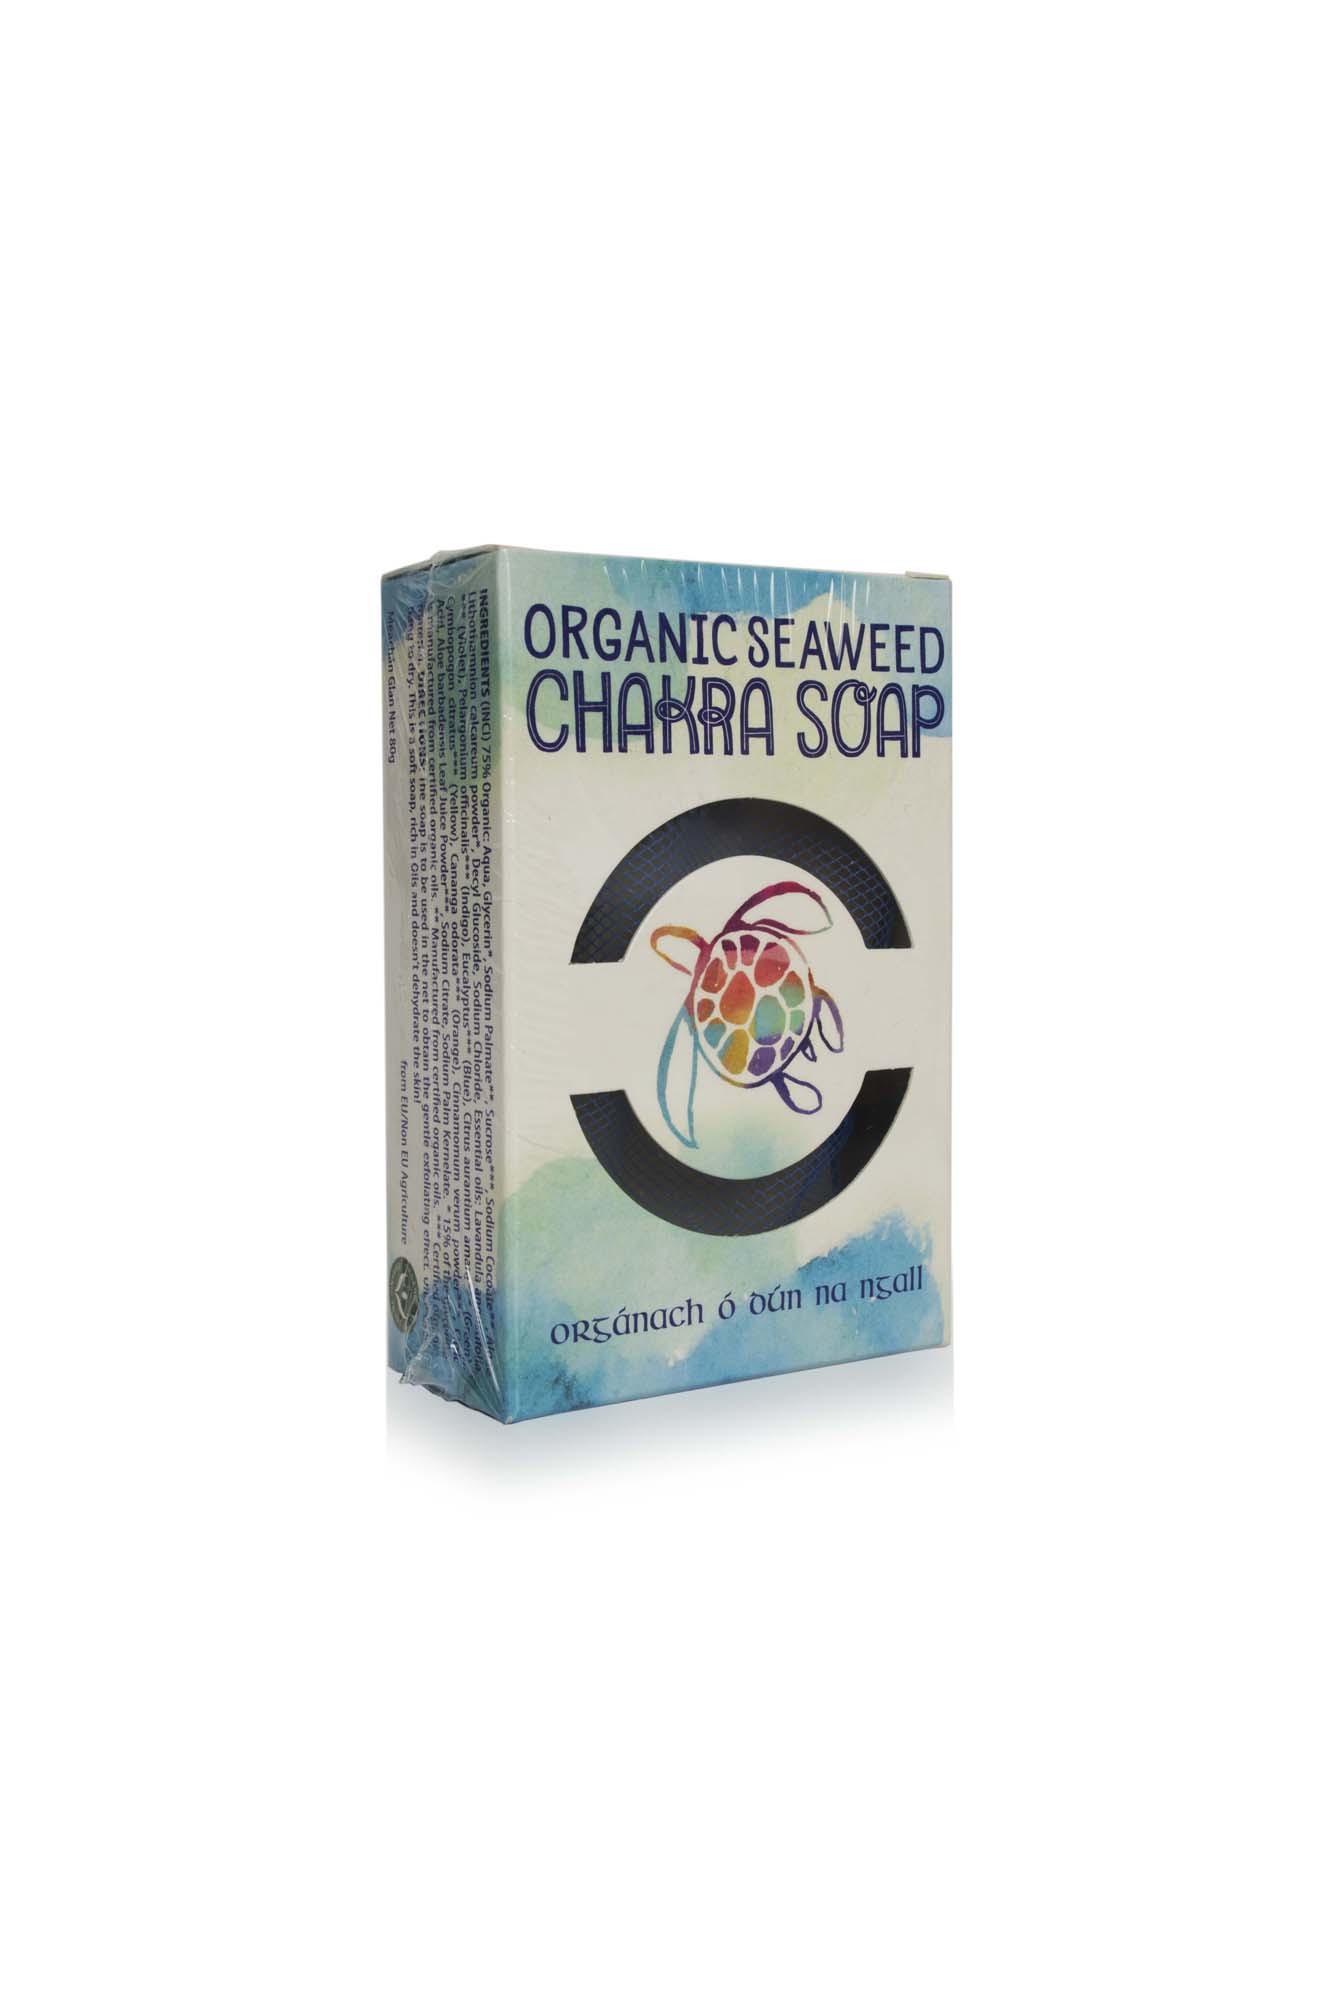 Organic scrubbing soap with seaweed